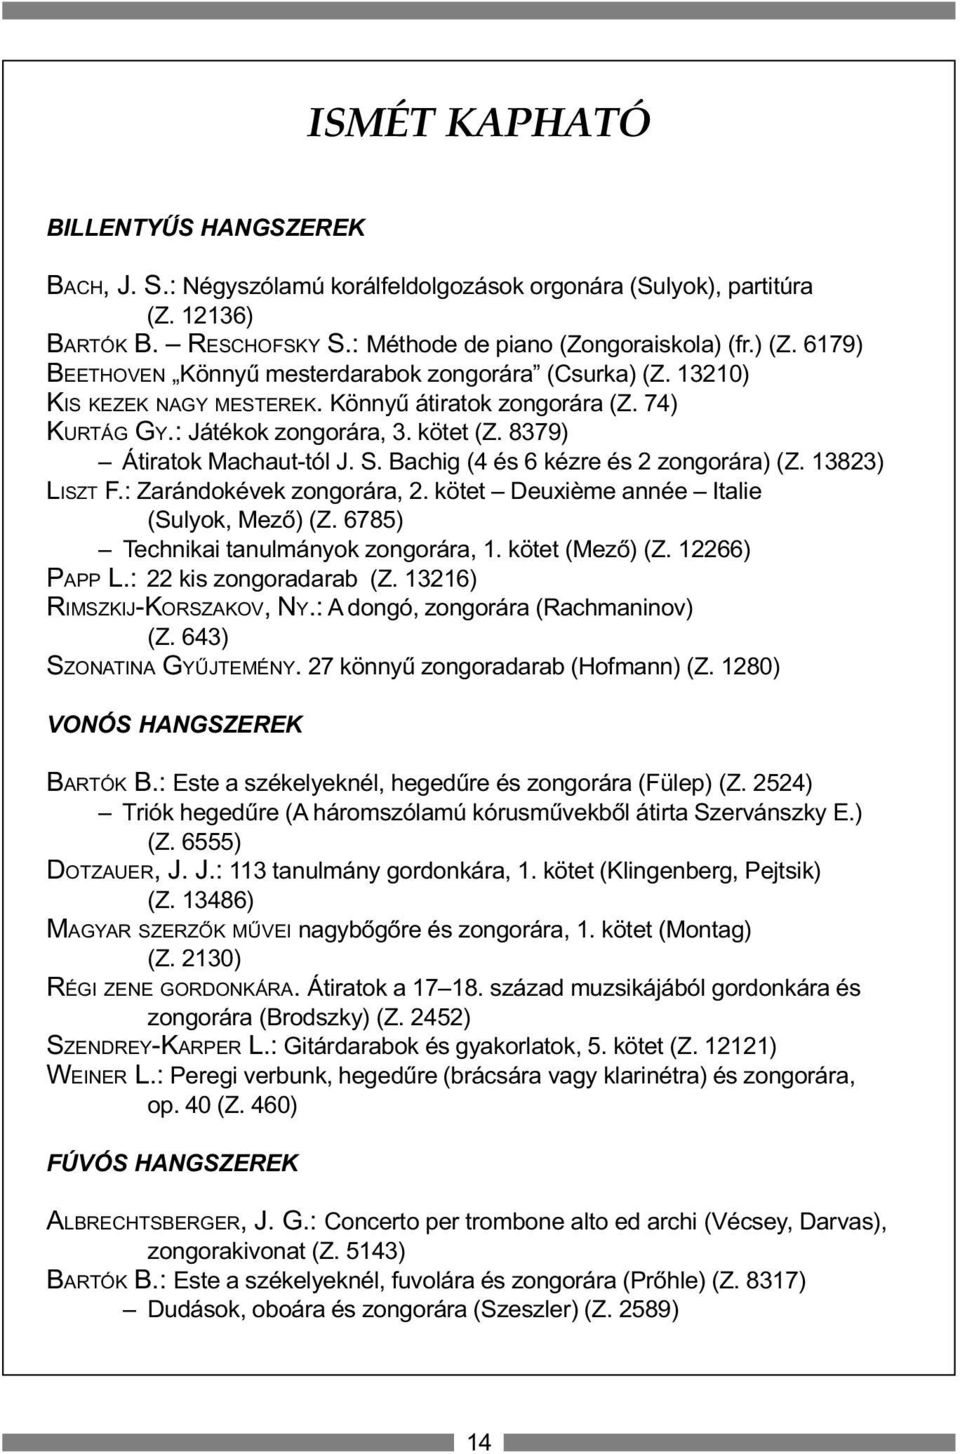 S. Bachig (4 és 6 kézre és 2 zongorára) (Z. 13823) LISZT F.: Zarándokévek zongorára, 2. kötet Deuxième année Italie (Sulyok, Mezõ) (Z. 6785) Technikai tanulmányok zongorára, 1. kötet (Mezõ) (Z.